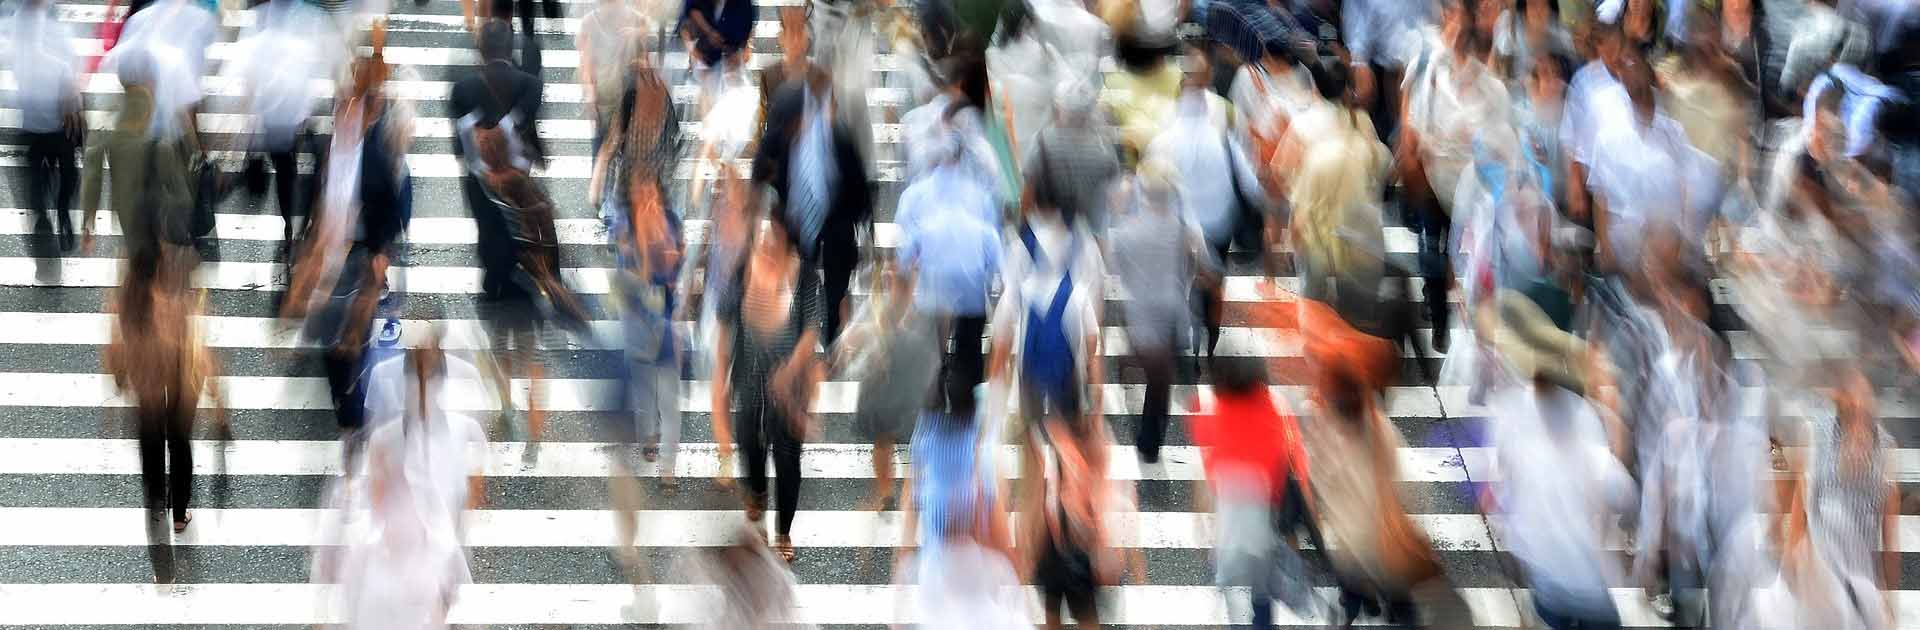 Barómetro del Real Instituto Elcano. Imagen desenfocada de una multitud de personas cruzando por un paso de zebra en una calle